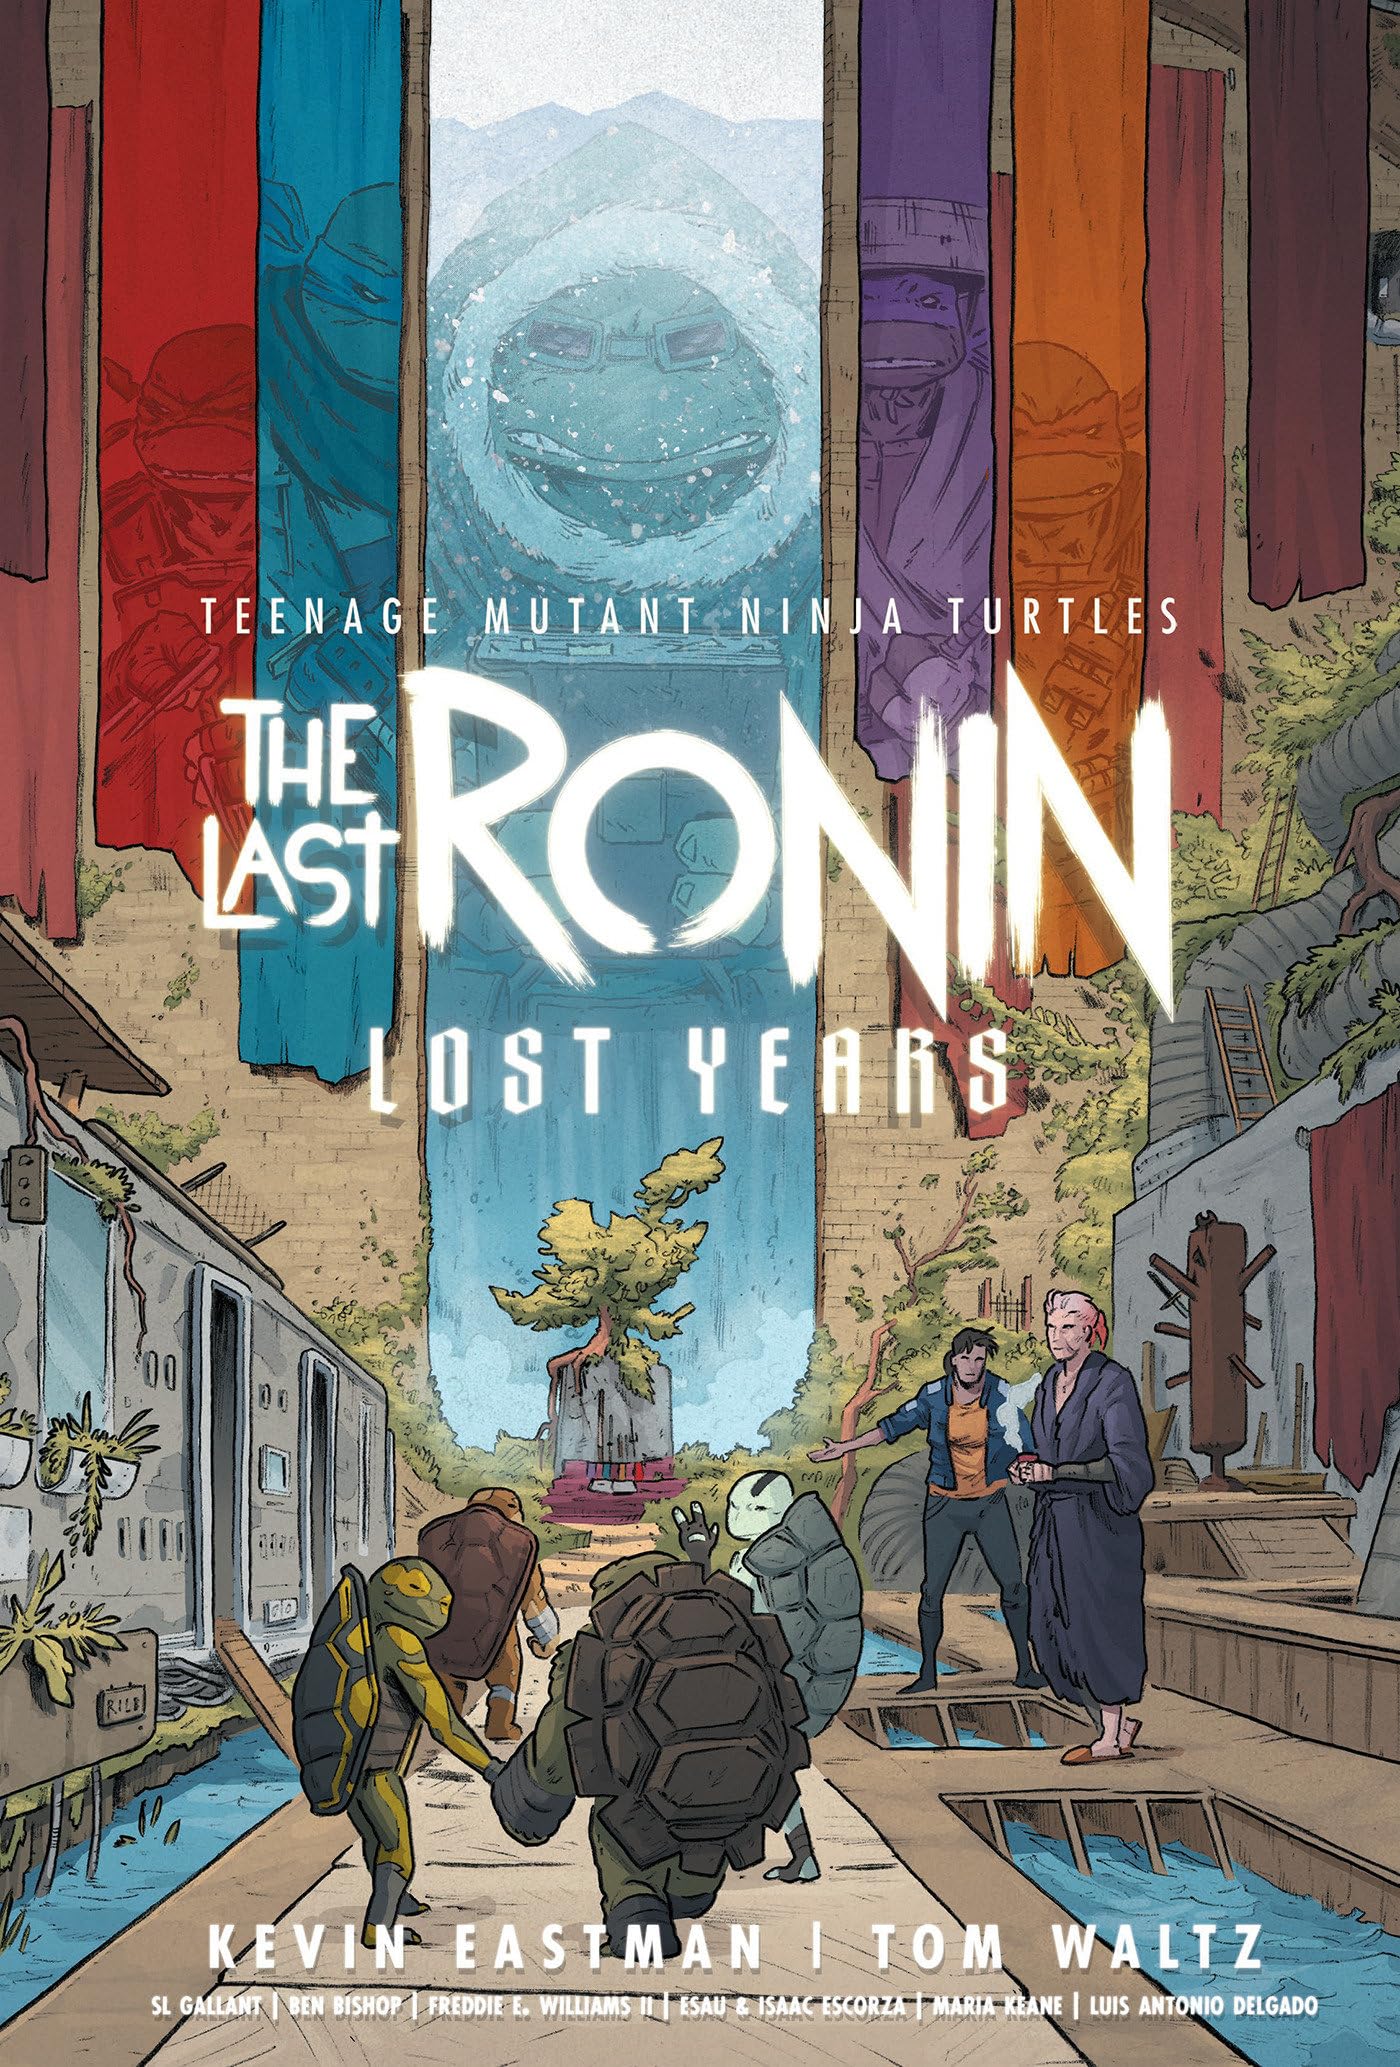 Teenage Mutant Ninja Turtles: The Last Ronin--Lost Years by Eastman, Kevin